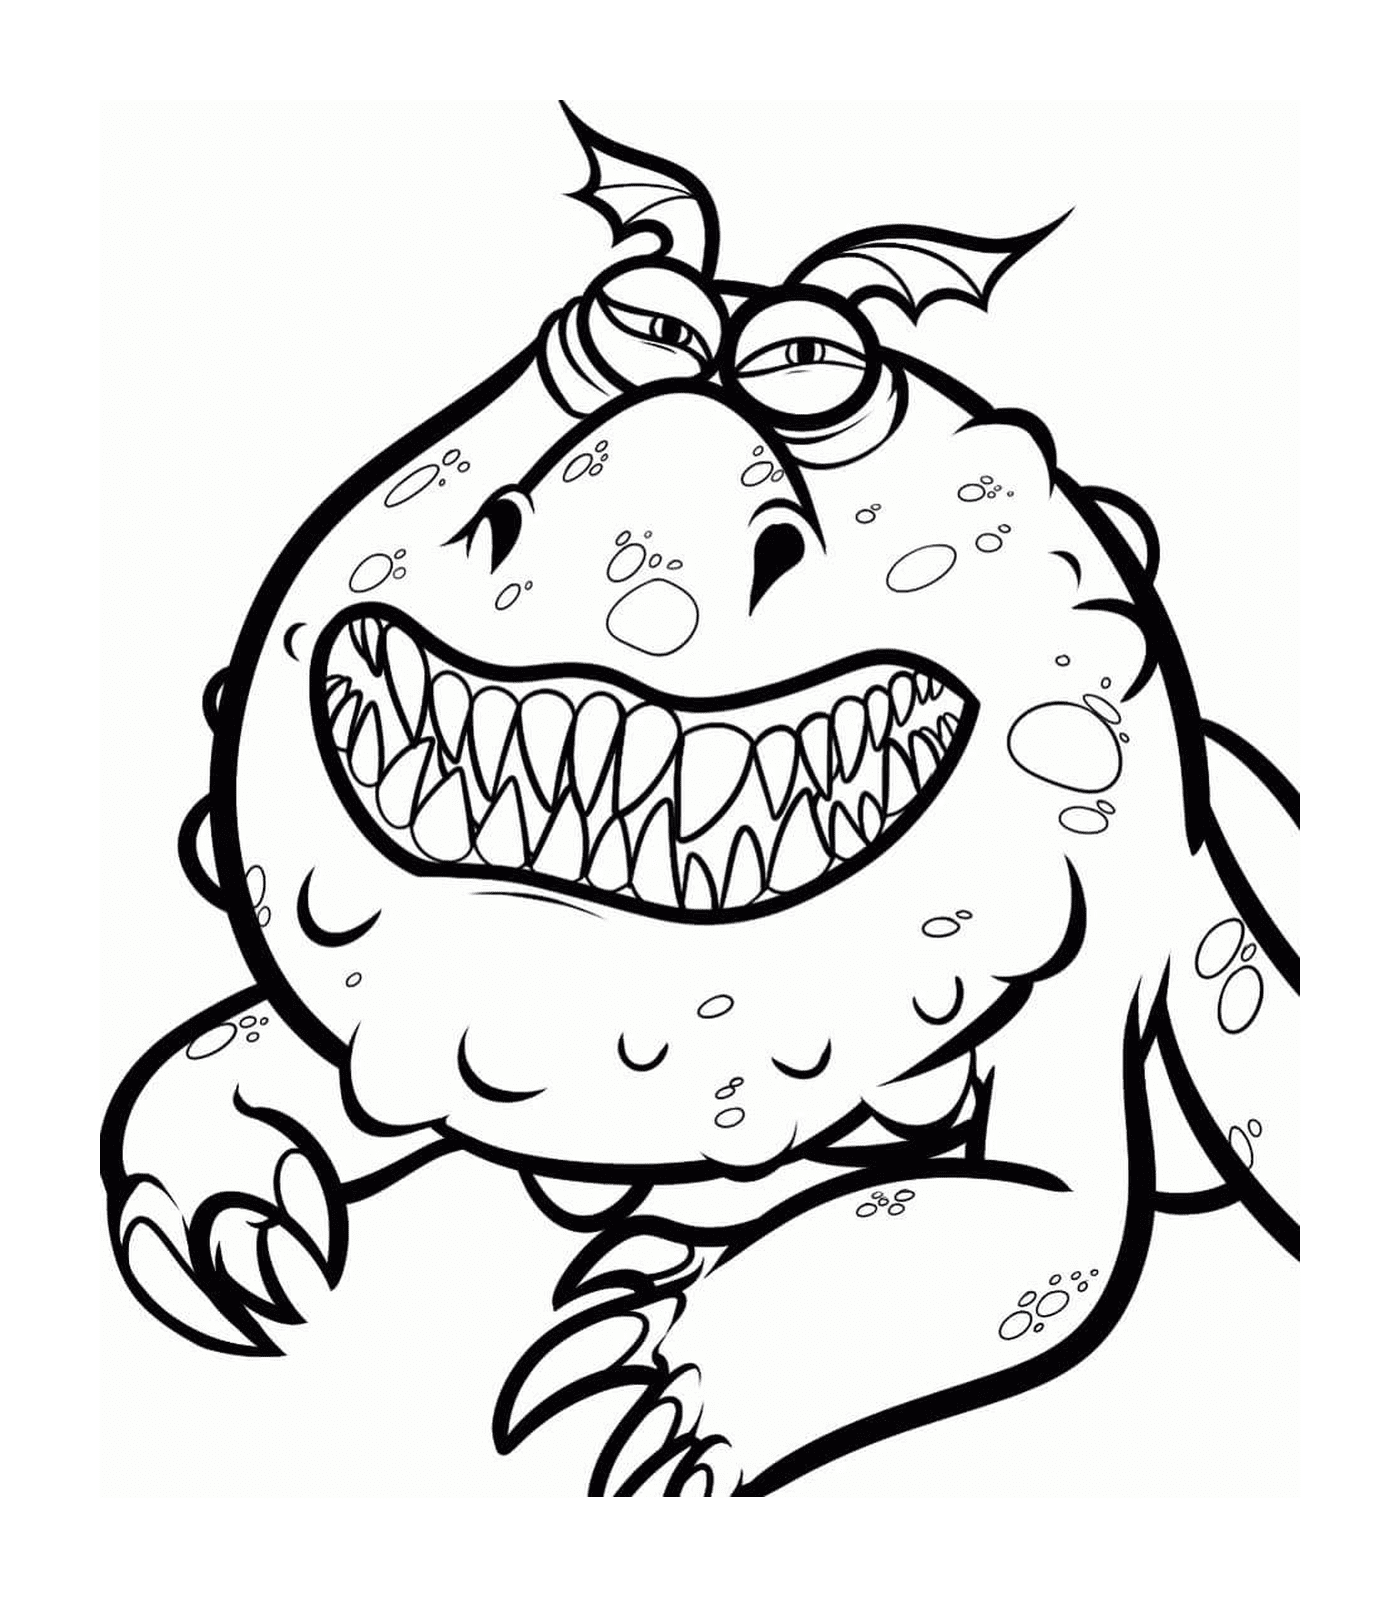   Meatlug, un monstre avec un grand sourire 